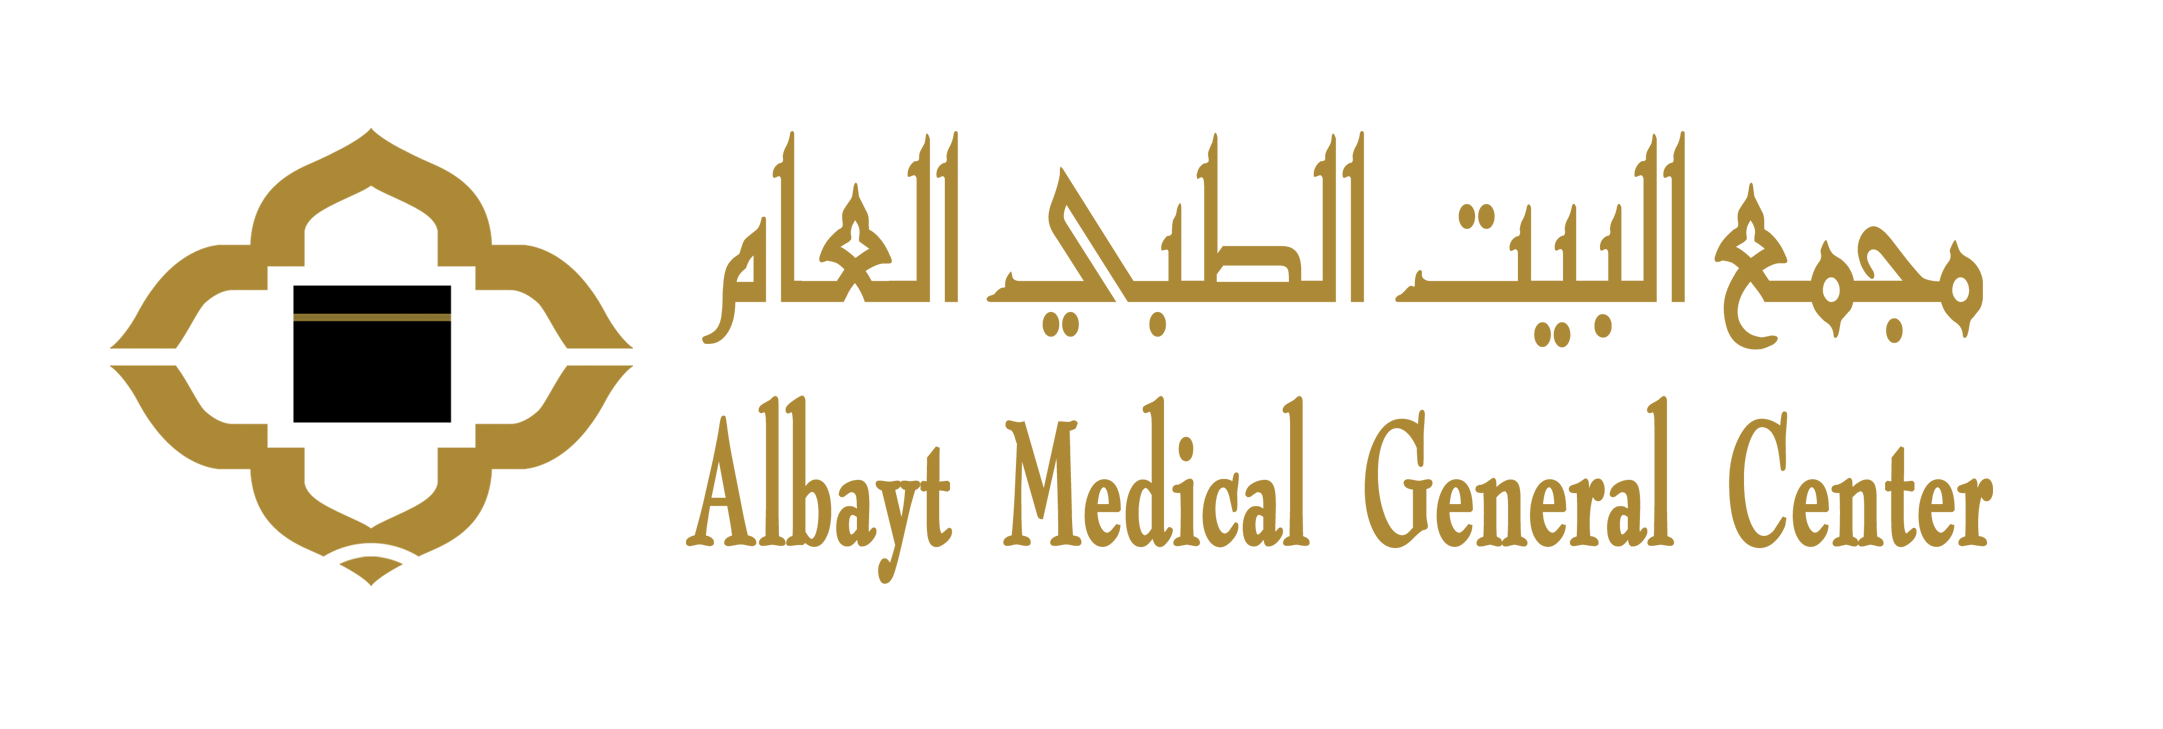 Albayt Medical General Center